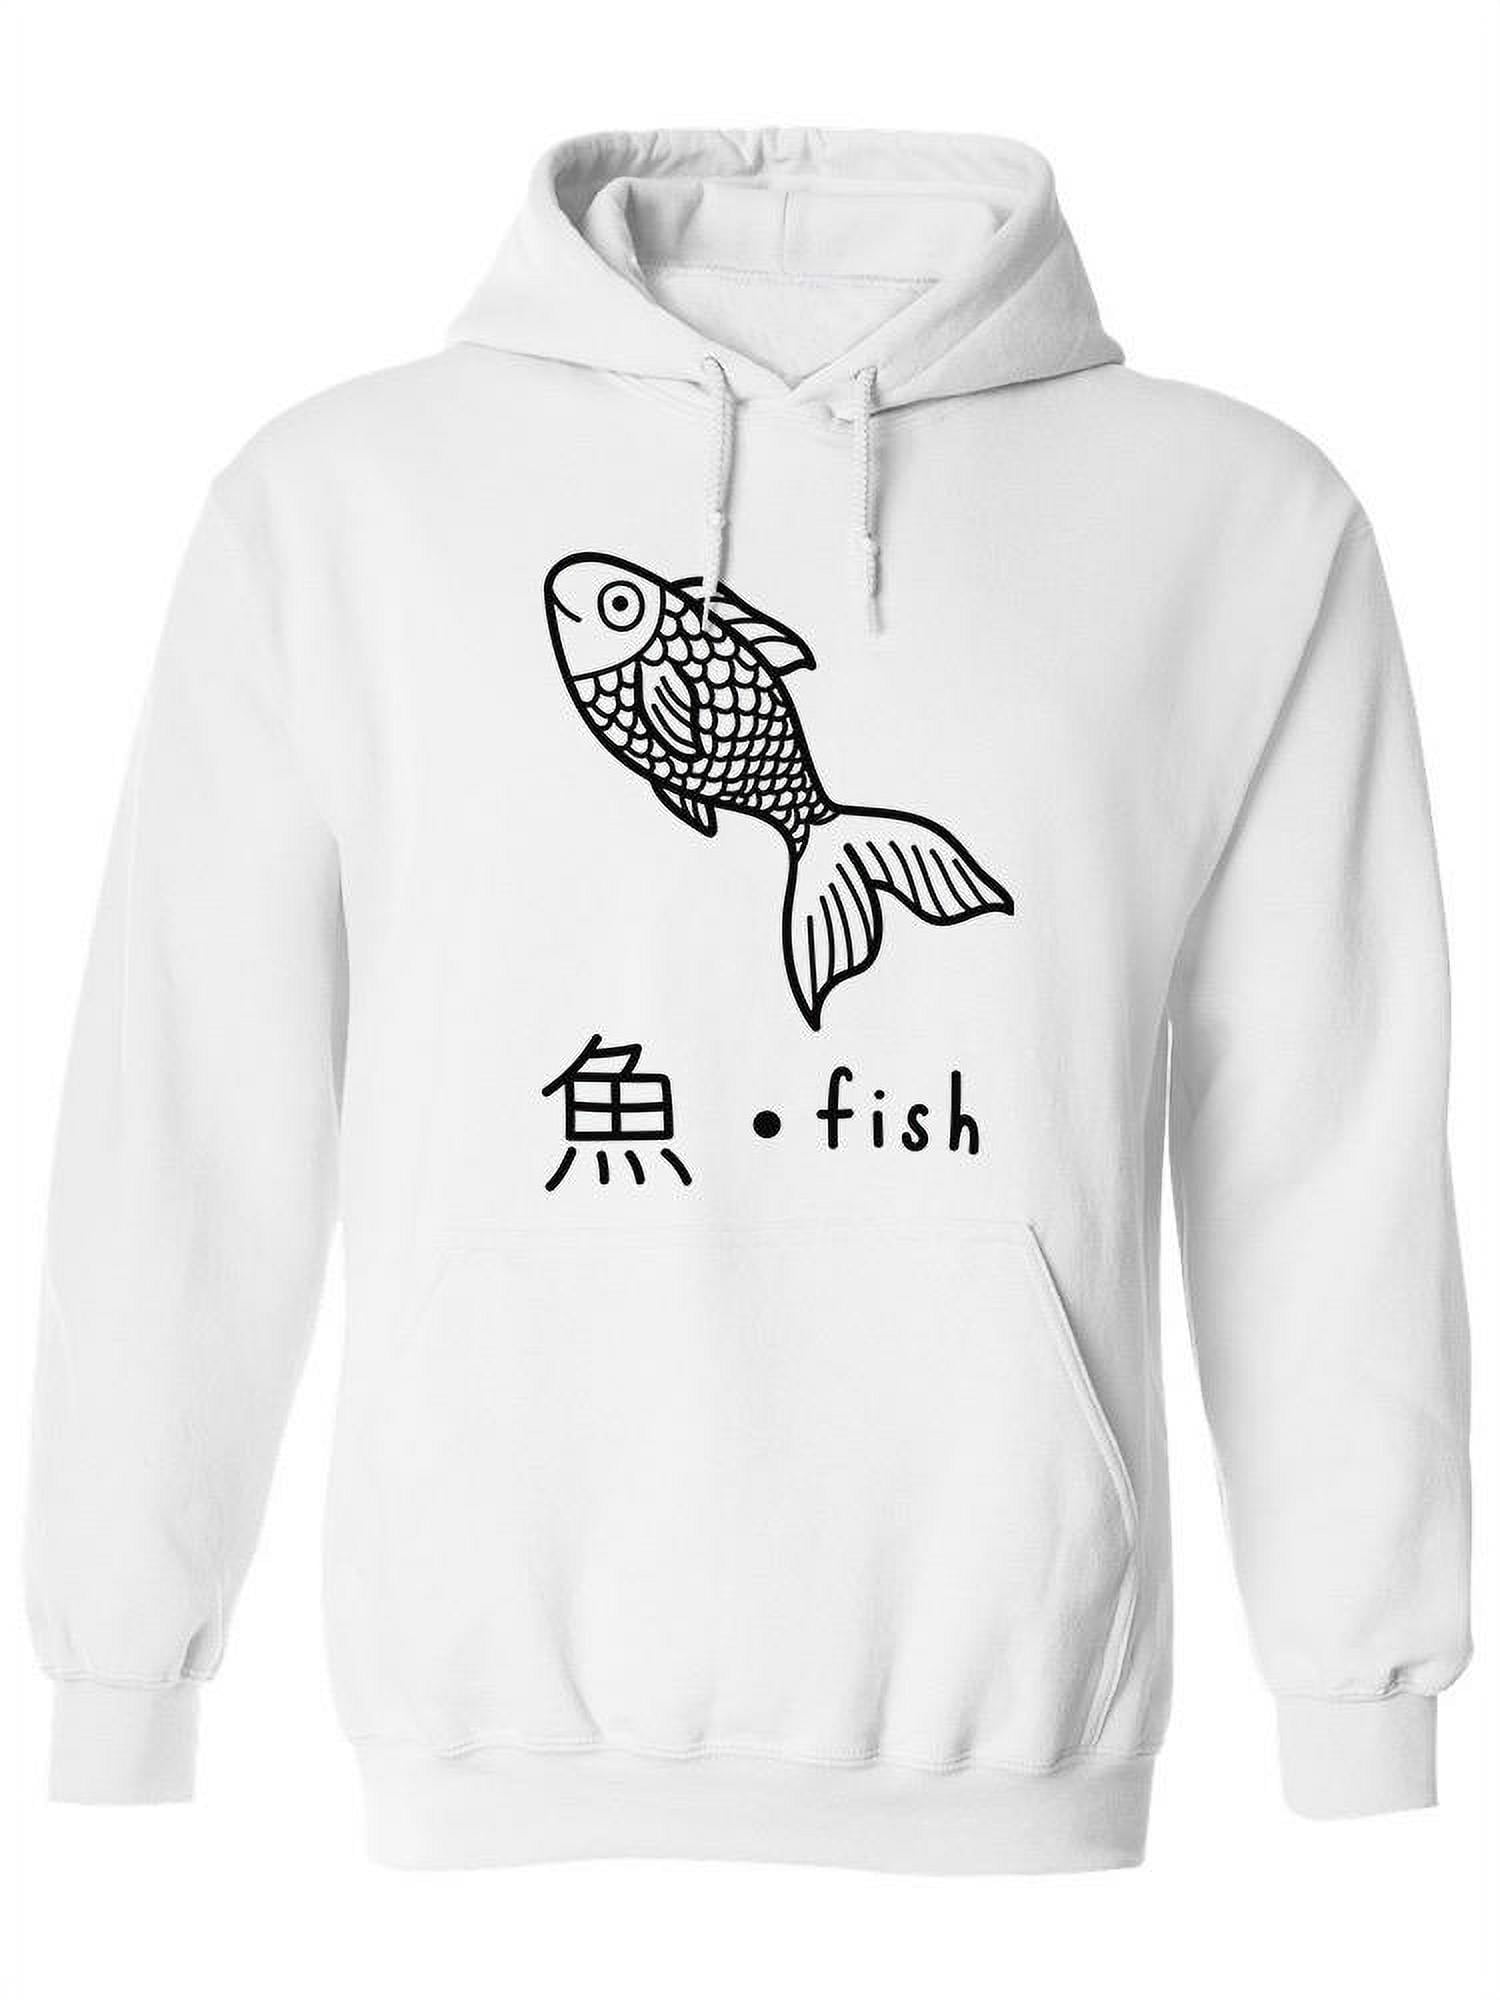 Fish Kanji, Sakana Hoodie Women -Image by Shutterstock, Female XX-Large